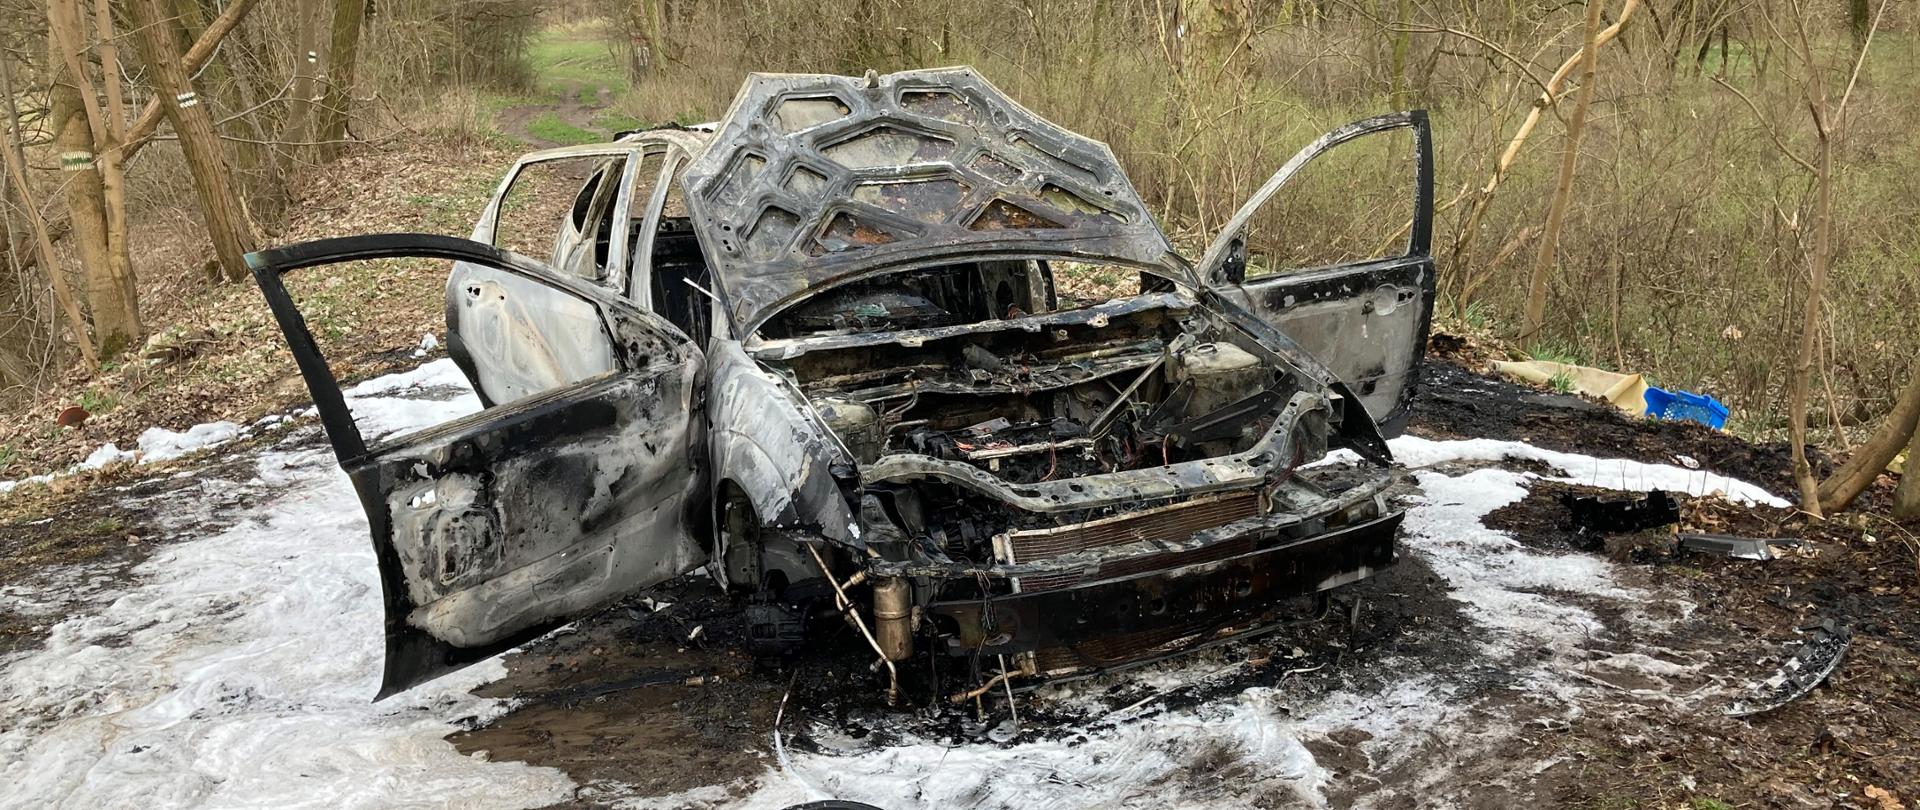 Na zdjęciu widać spalone auto osobowe